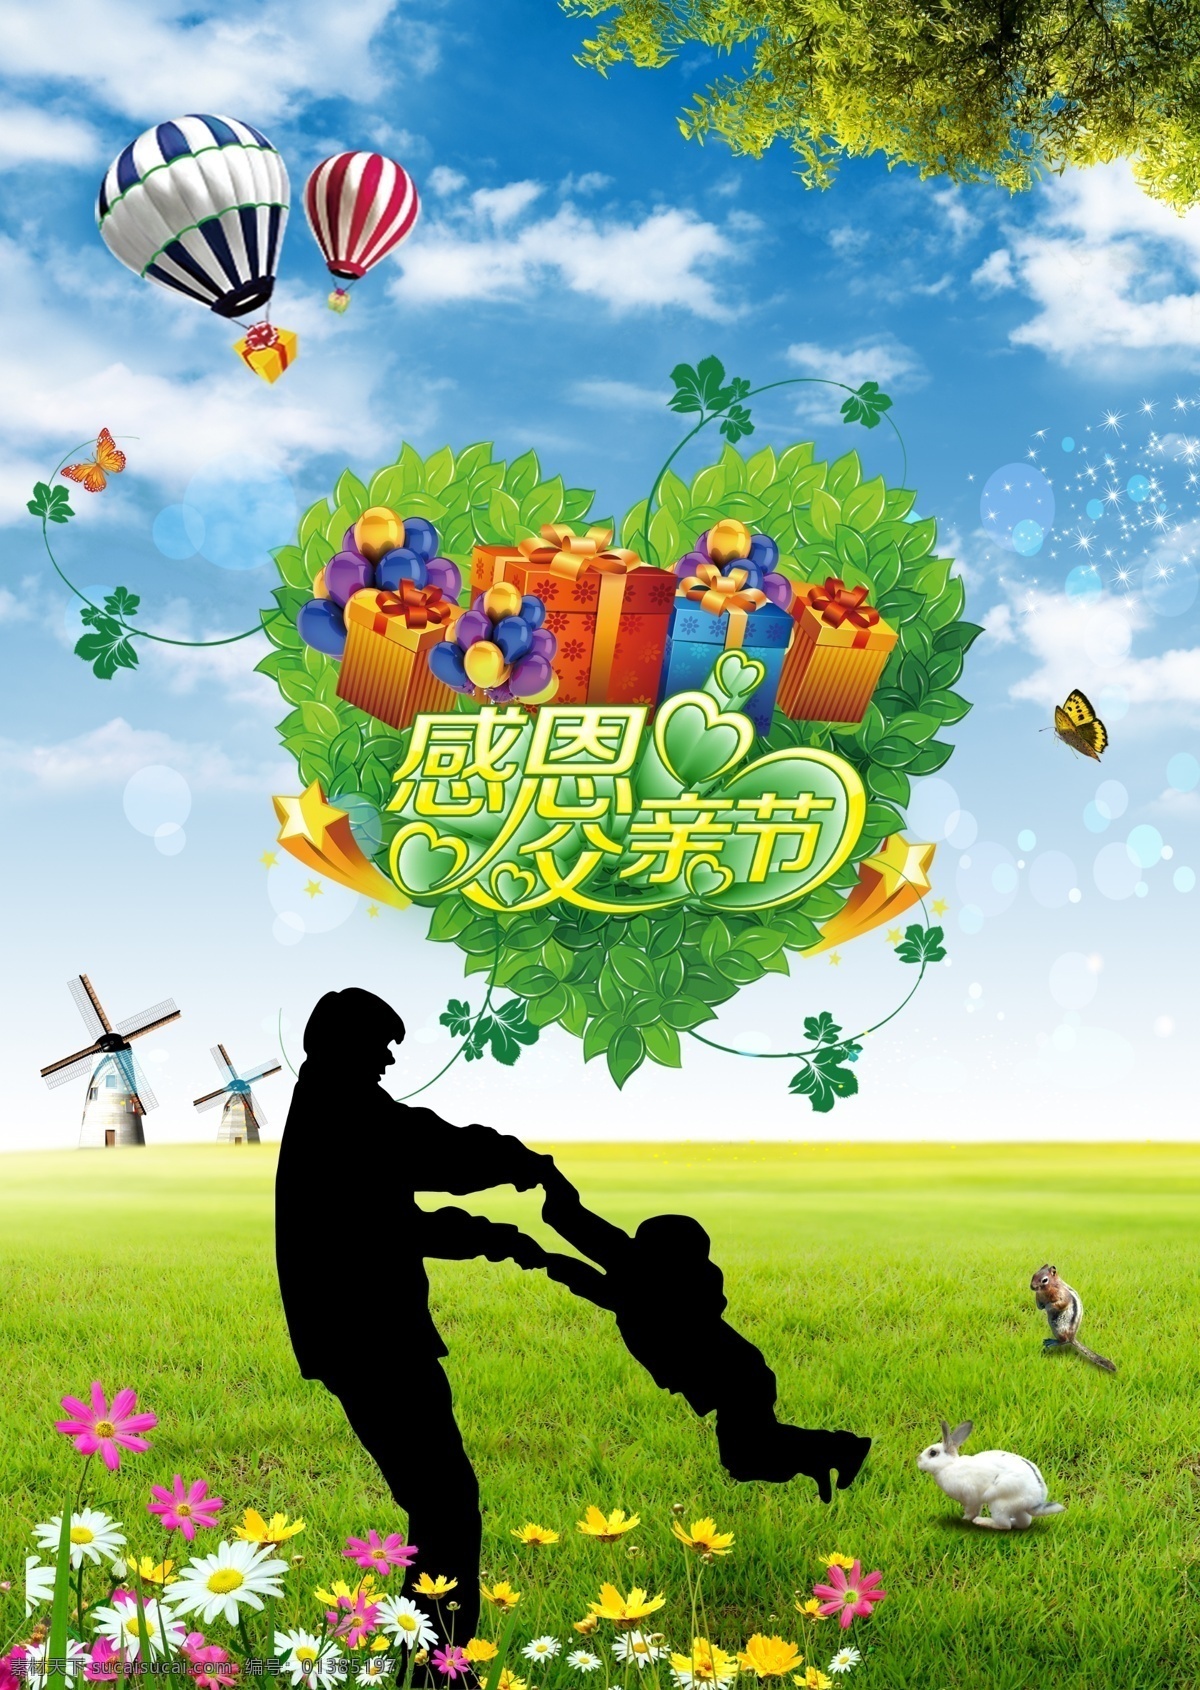 父亲节 快乐 父亲节快乐 节日素材 礼品盒 绿草地 热气球 模板下载 父子剪影 朵朵鲜花 心样的花环 母亲父亲节